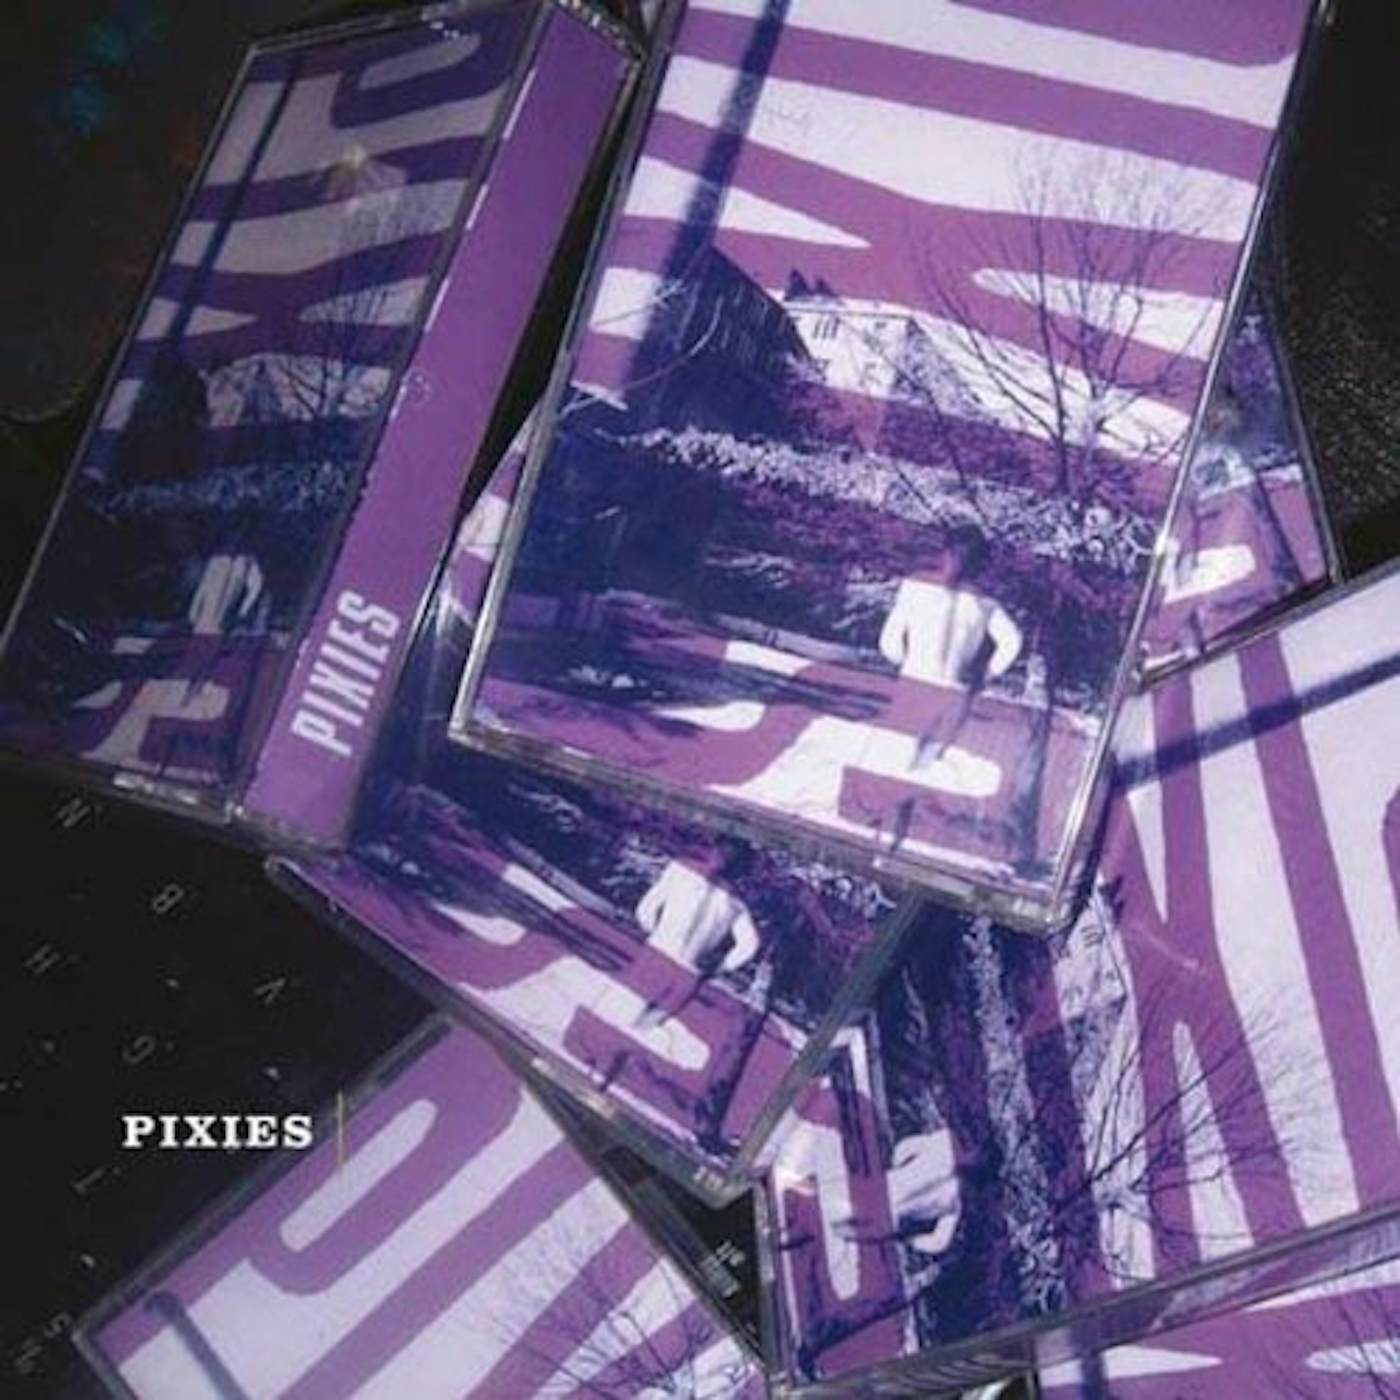 PIXIES Vinyl Record